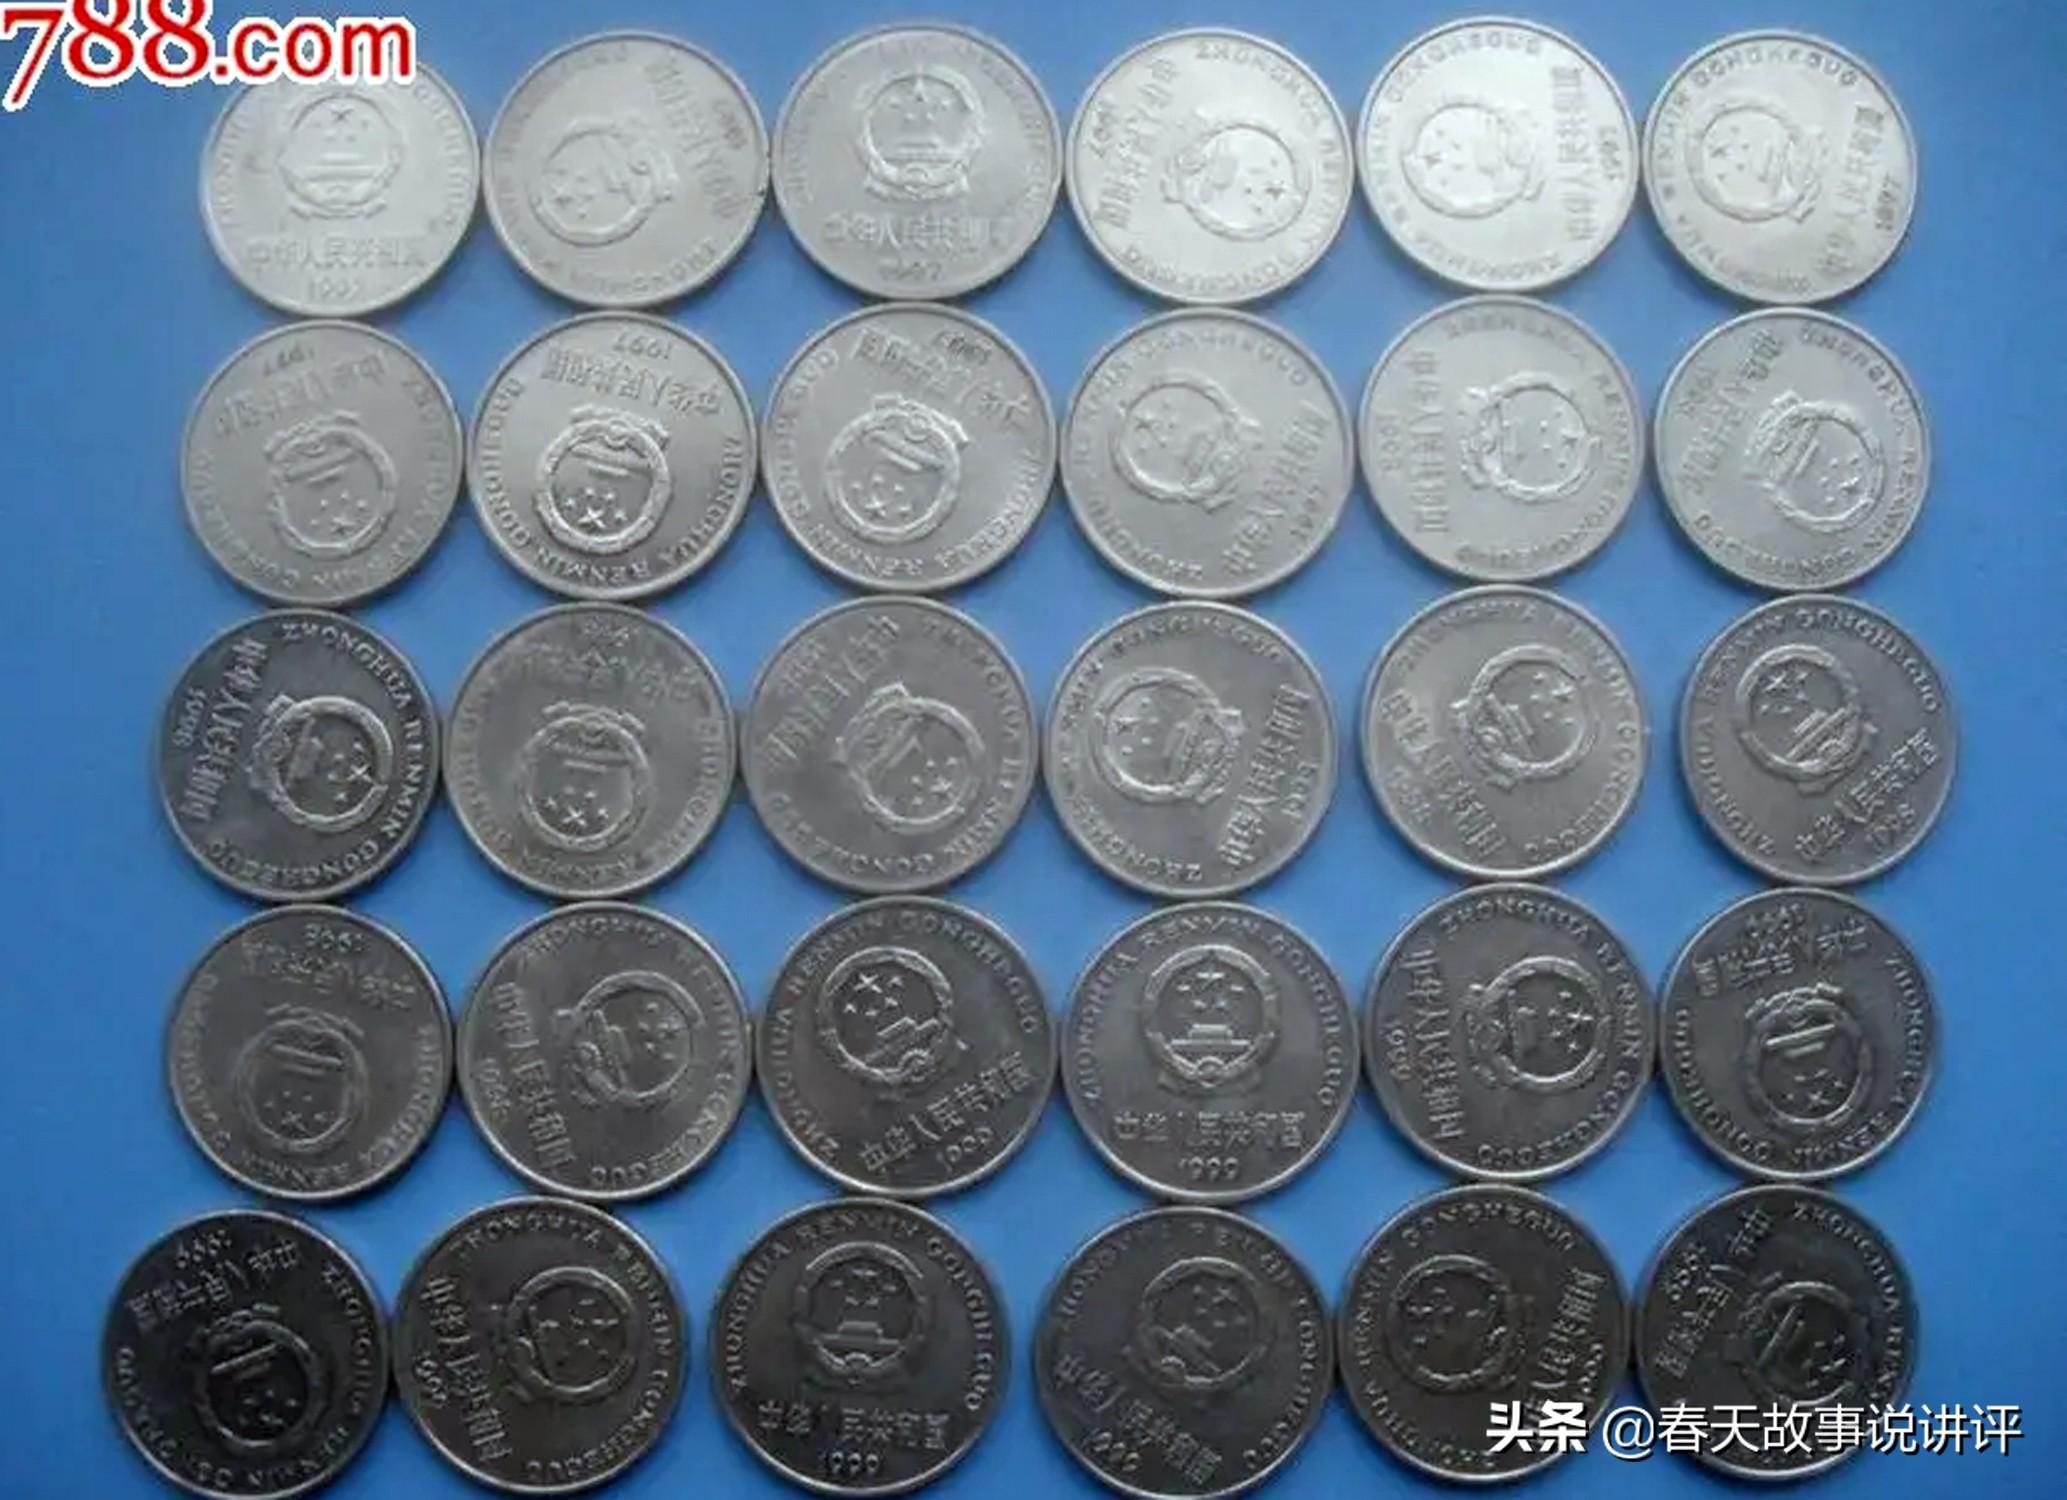 1999年一元硬币值多少钱牡丹(1999年1元硬币牡丹)